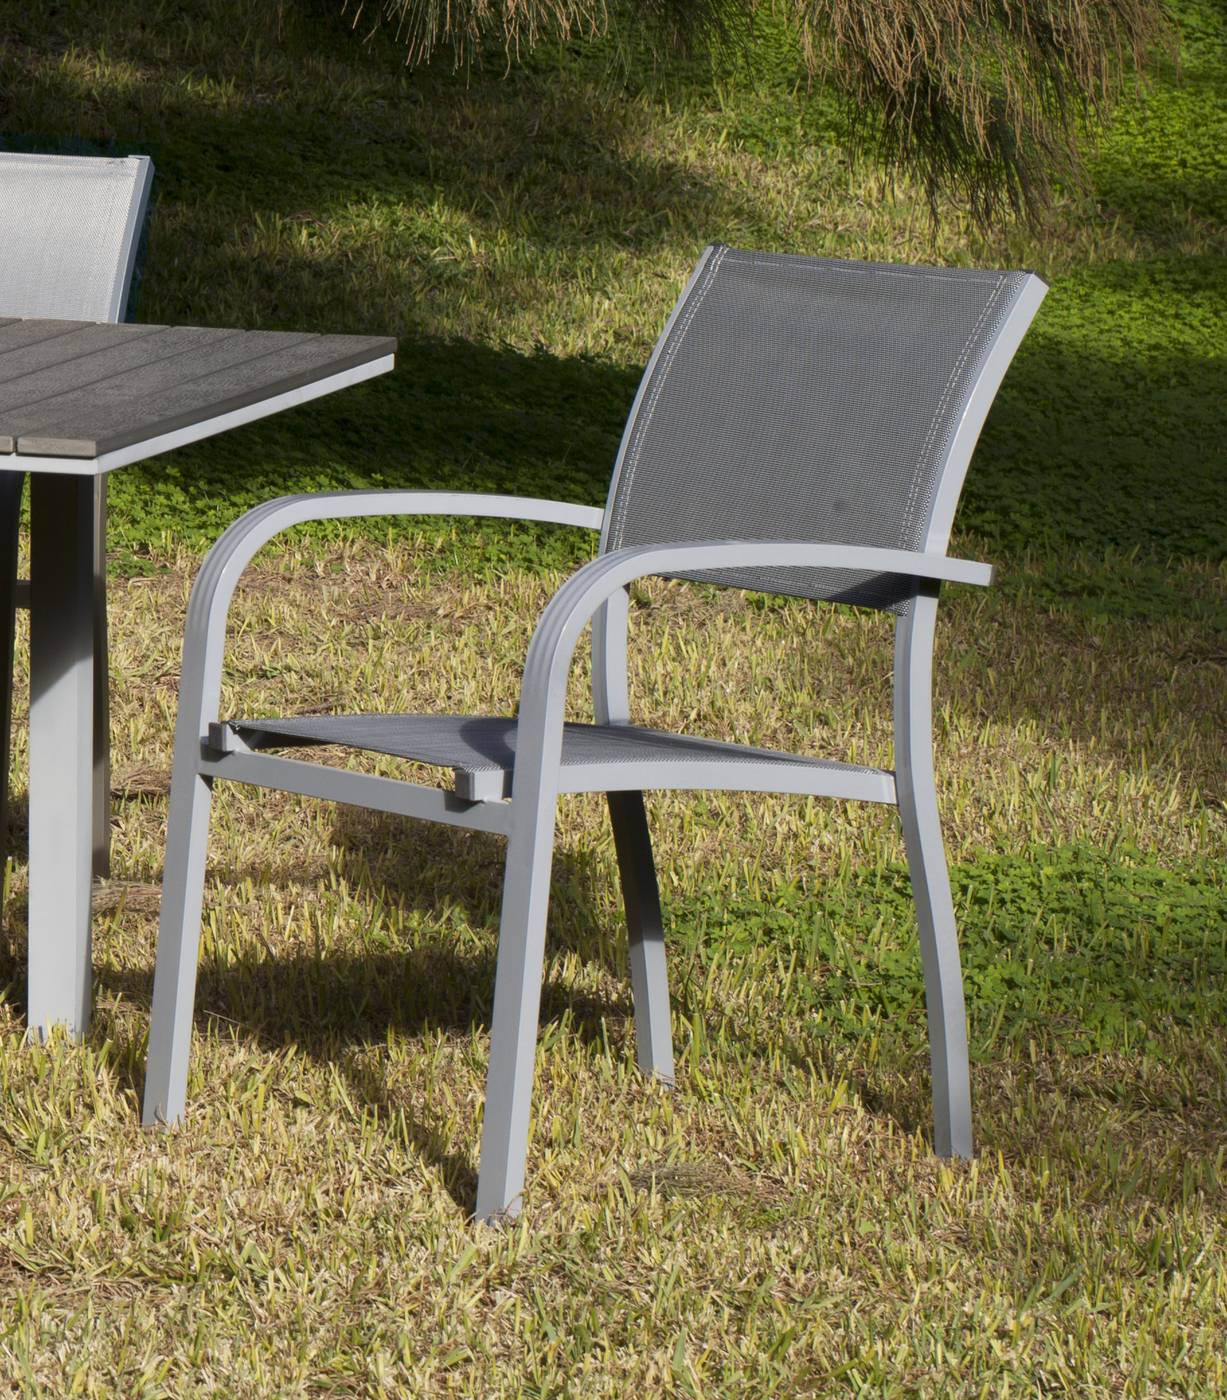 Conjunto Aluminio Denis-Amberes - Conjunto de aluminio color plata: mesa extensible 150-200 cm. con tablero poliwood + 6 sillones de alumino y textilen